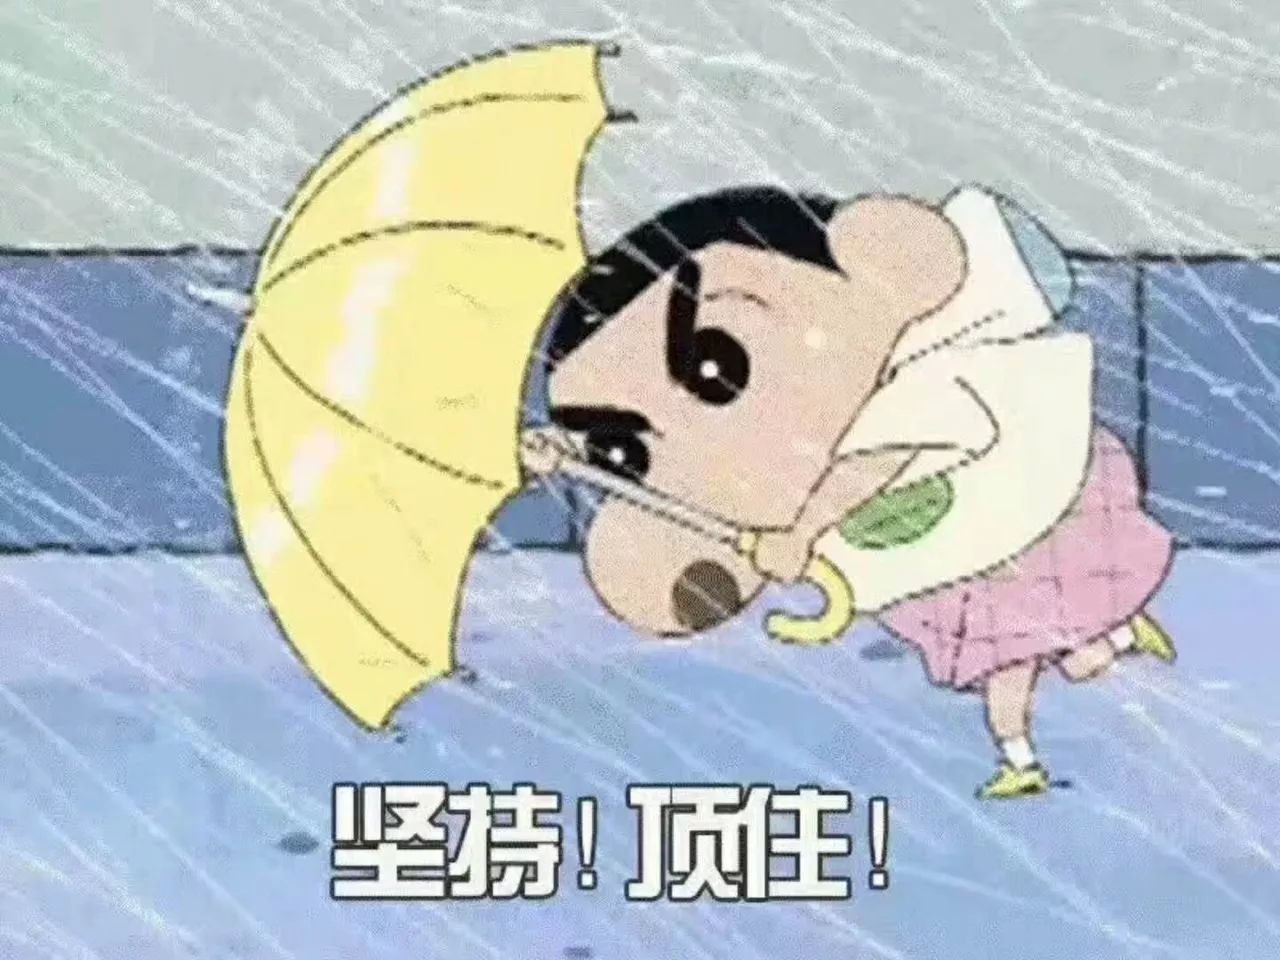 台风"卡努"携狂风暴雨而来,致敬九江这些奋战在抗台风一线的人!